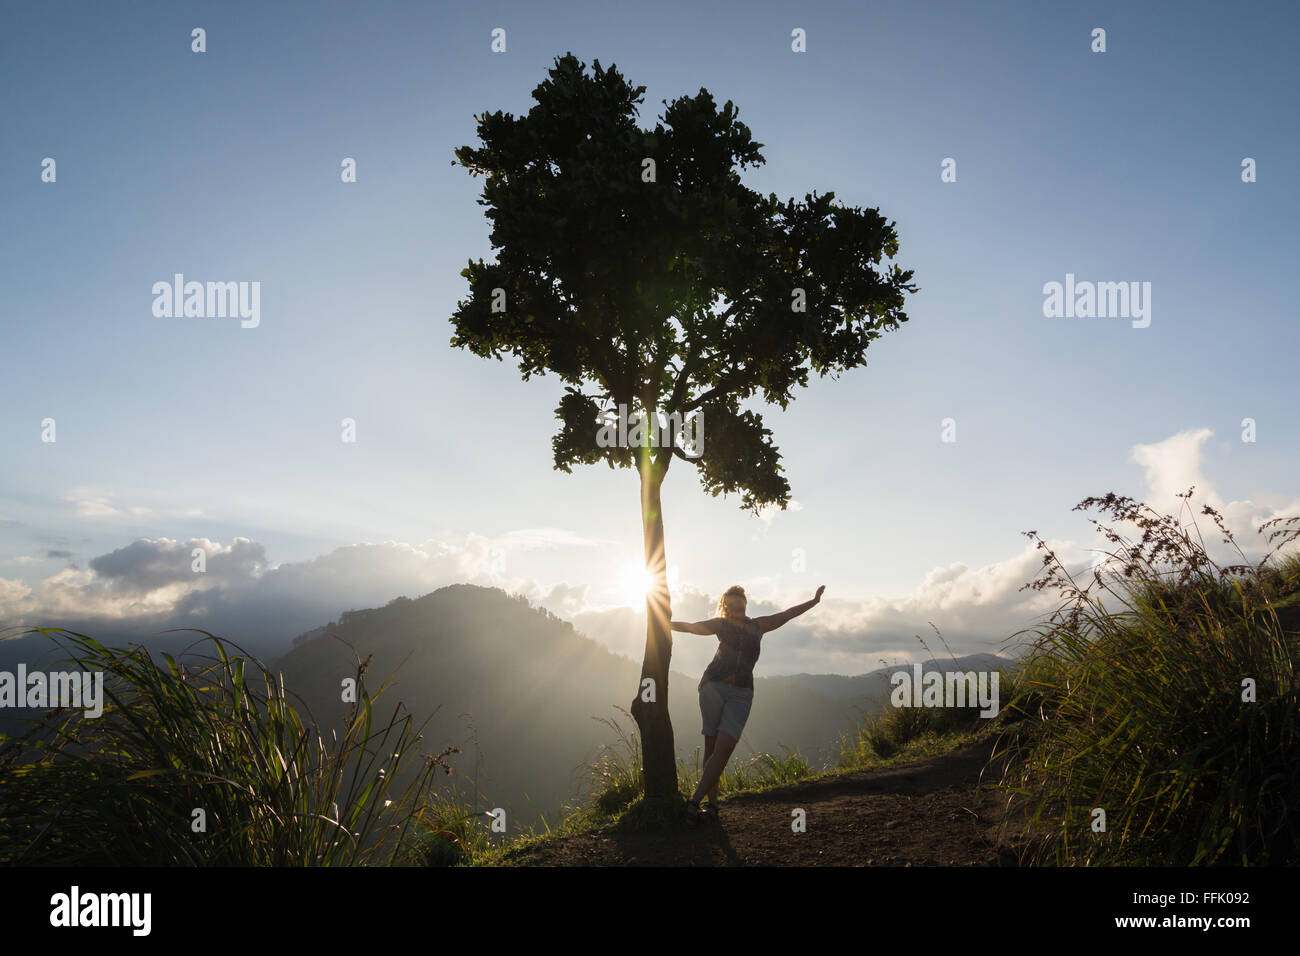 Hintergrundbeleuchtung Silhouette eines Baumes und einer Frau Stockfoto